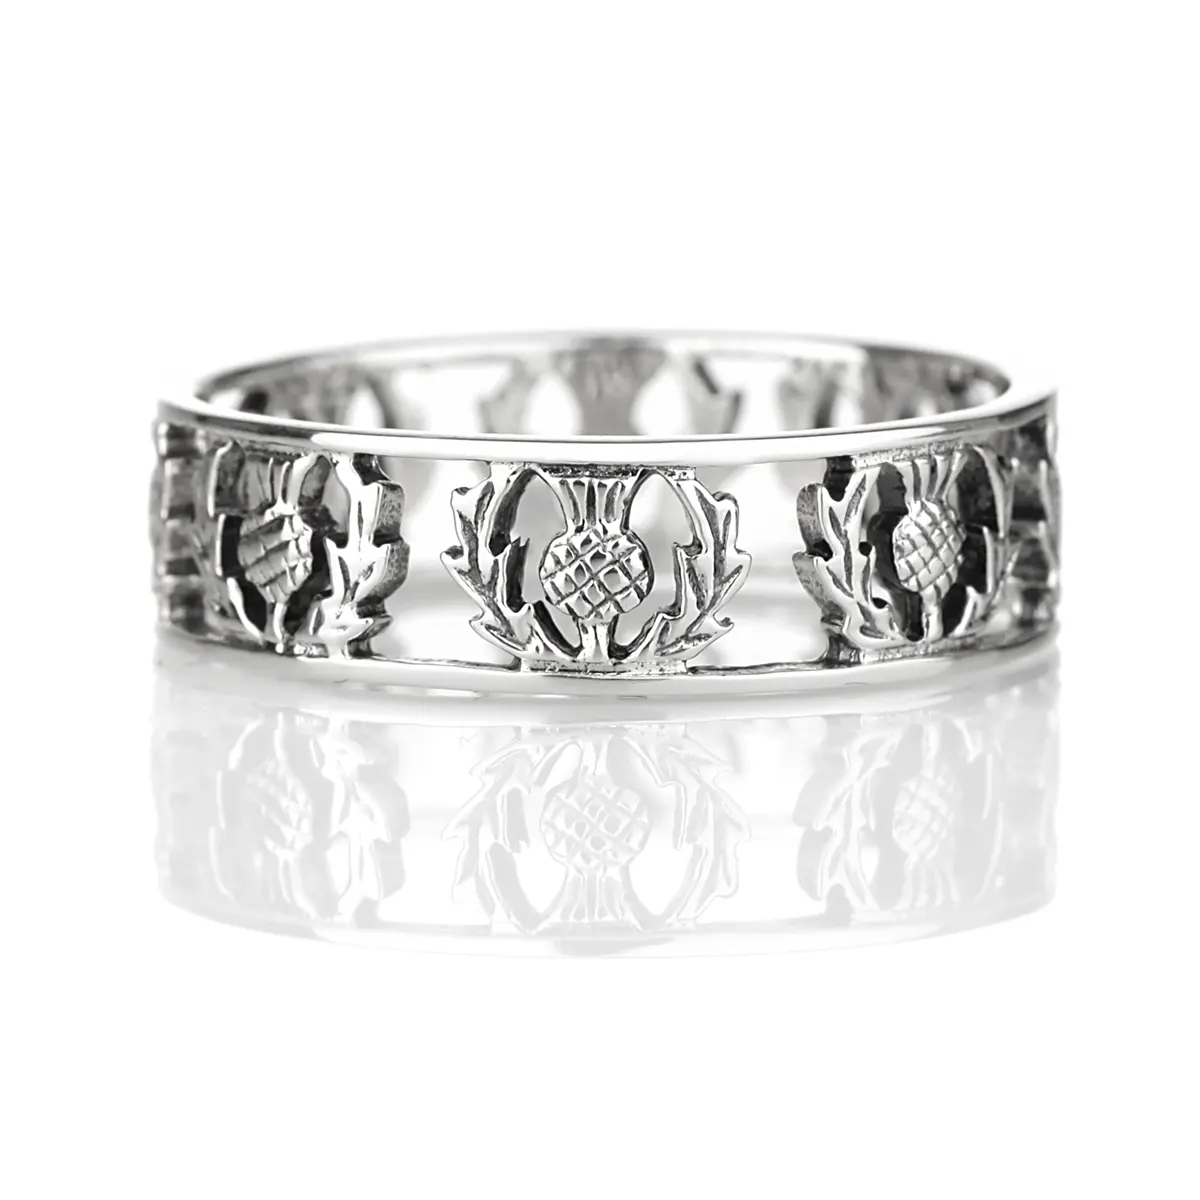 Scottish Thistle Ring - Sterling Silber mit schottischen Disteln